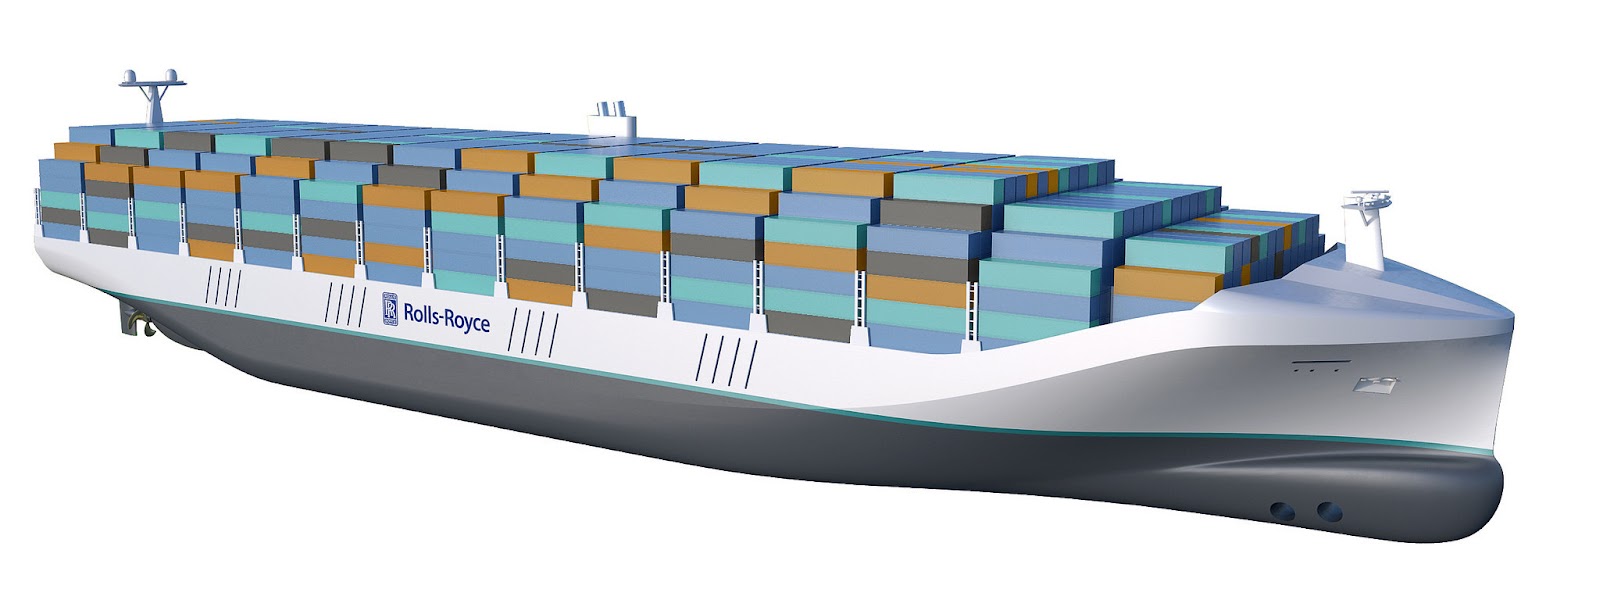 Autonomous Cargo Ship Model